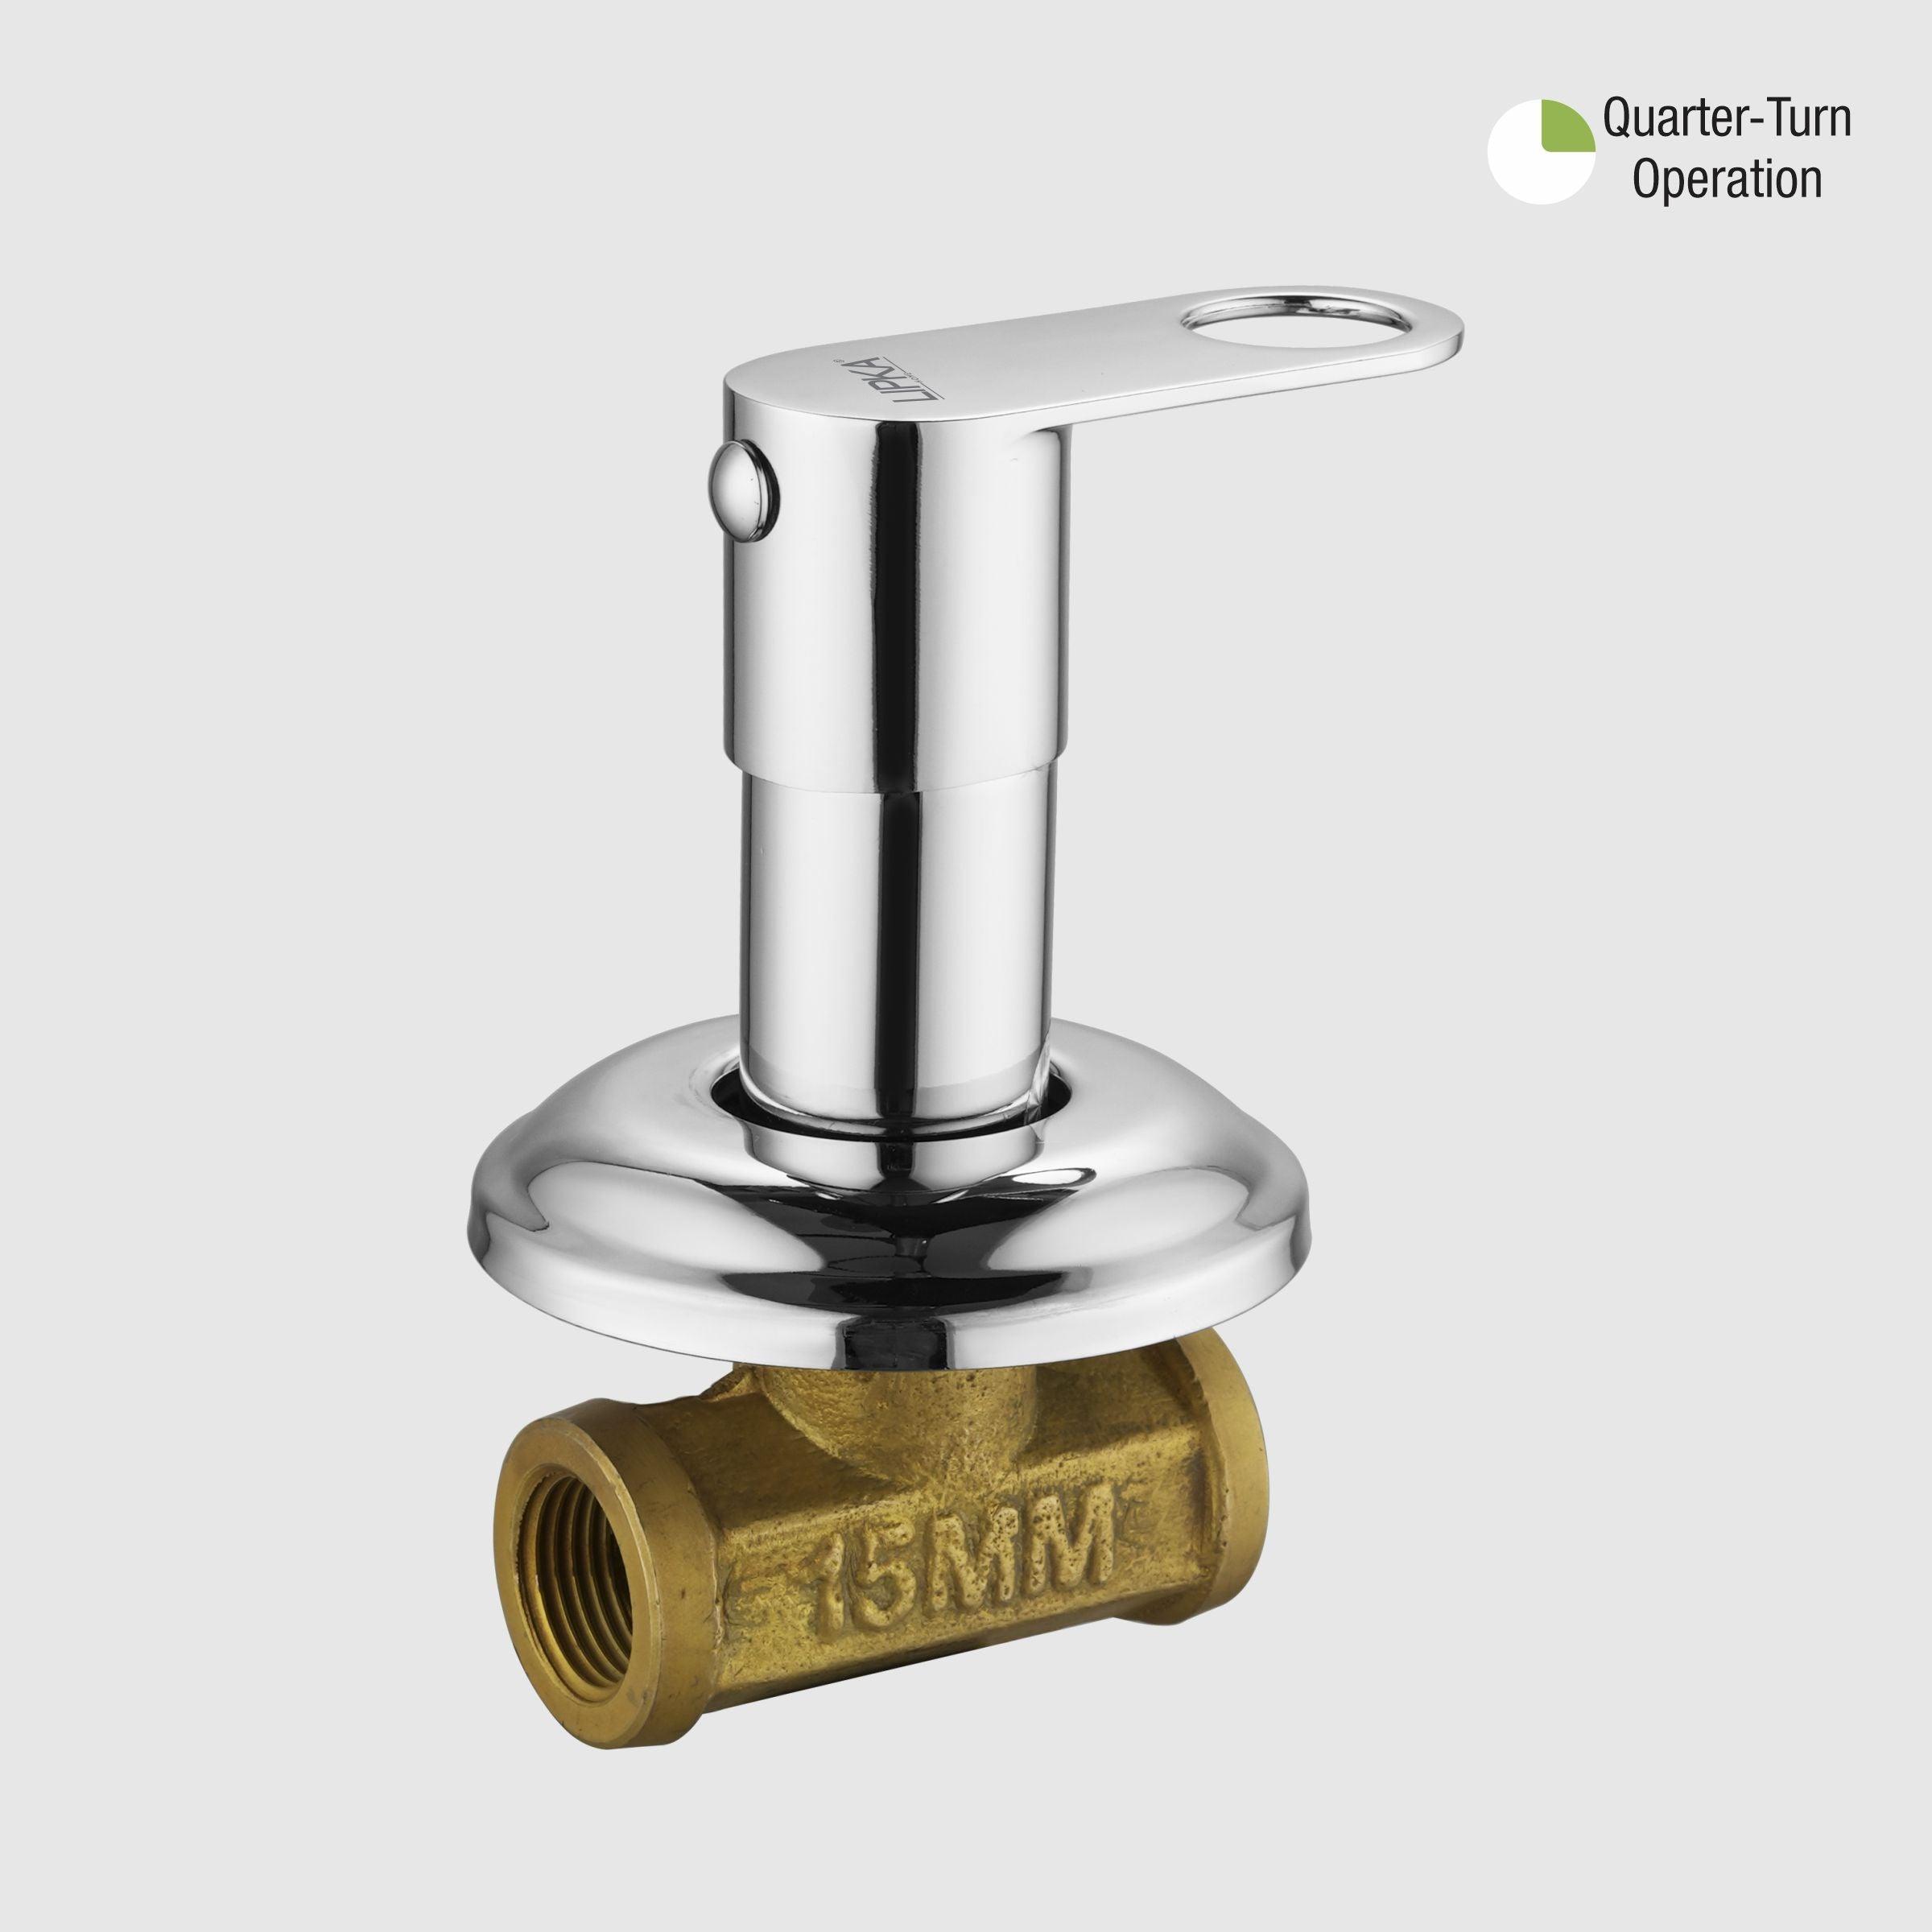 Orbiter Concealed Stop Valve (15mm) Brass Faucet - LIPKA - Lipka Home